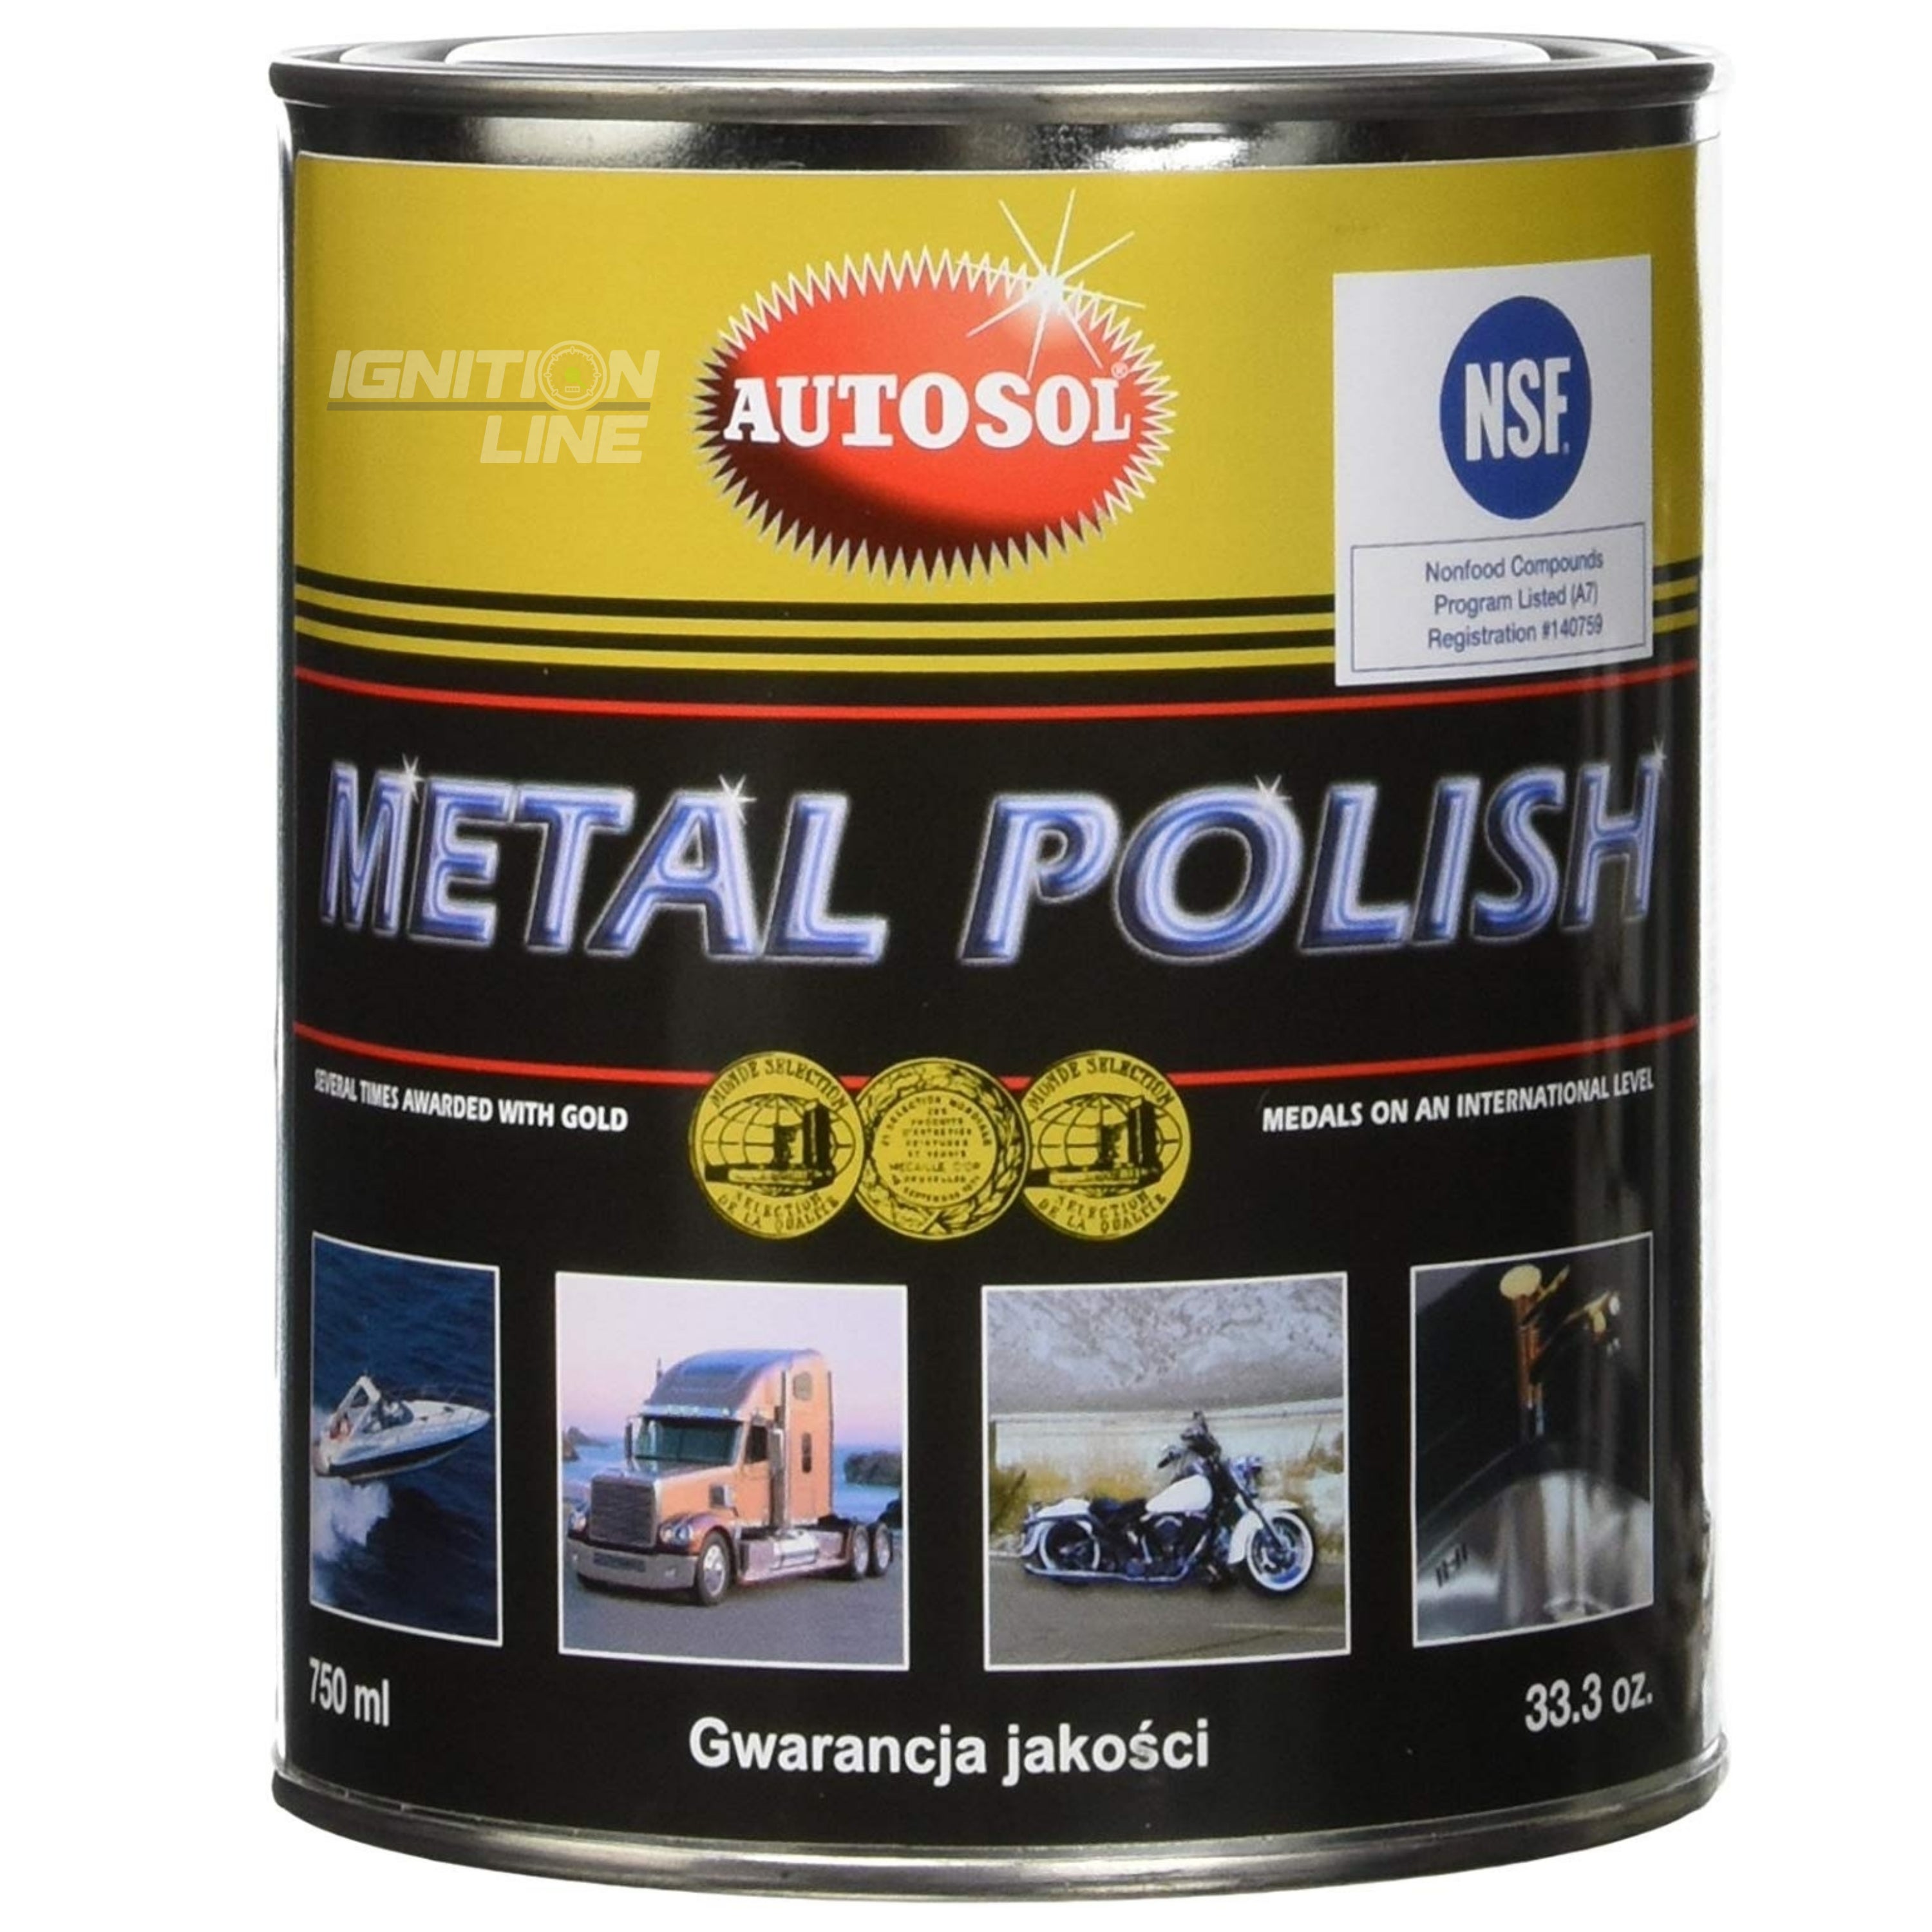 Autosol Metal Polish Tin 750ml